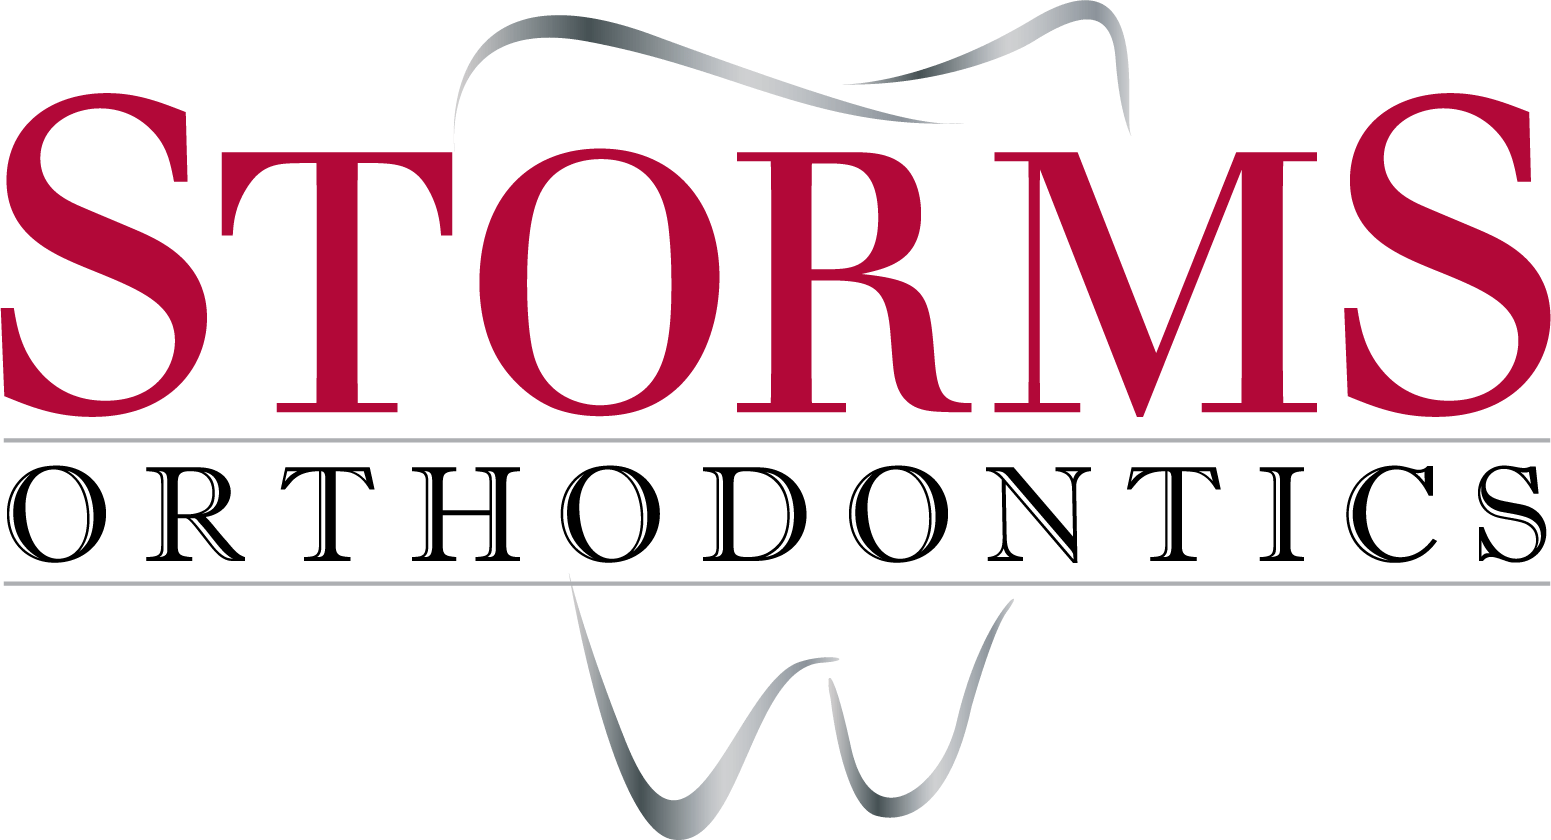 Storms Orthodontics Logo